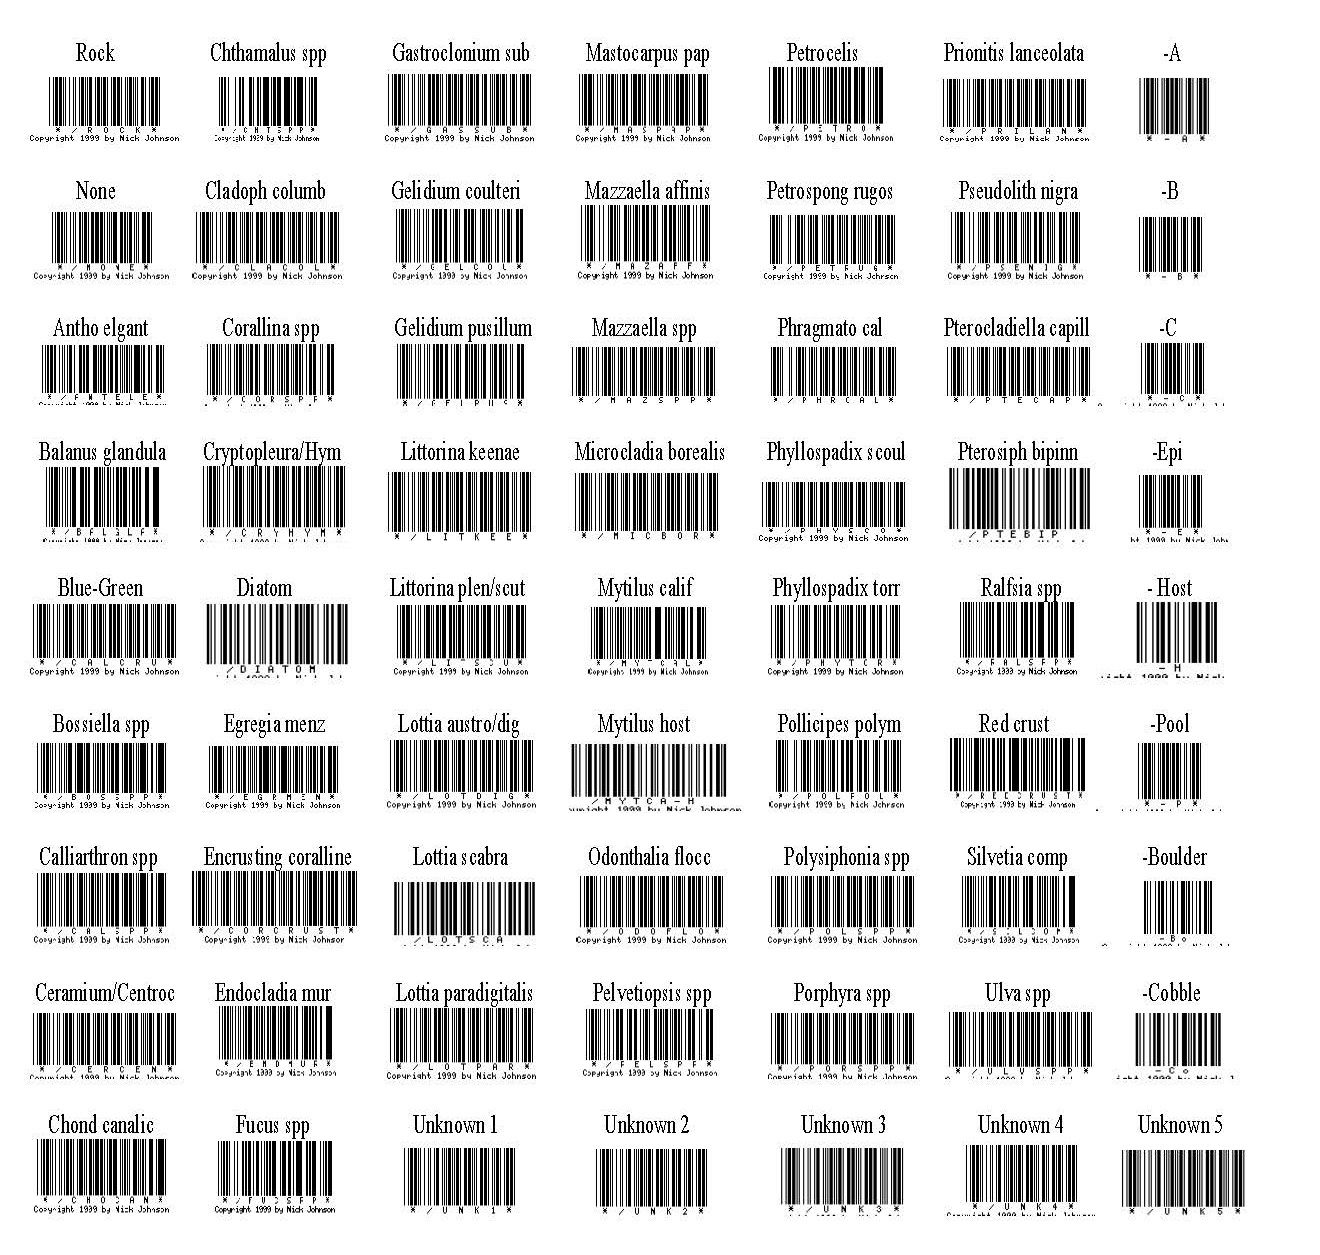 Barcode scanning sheet